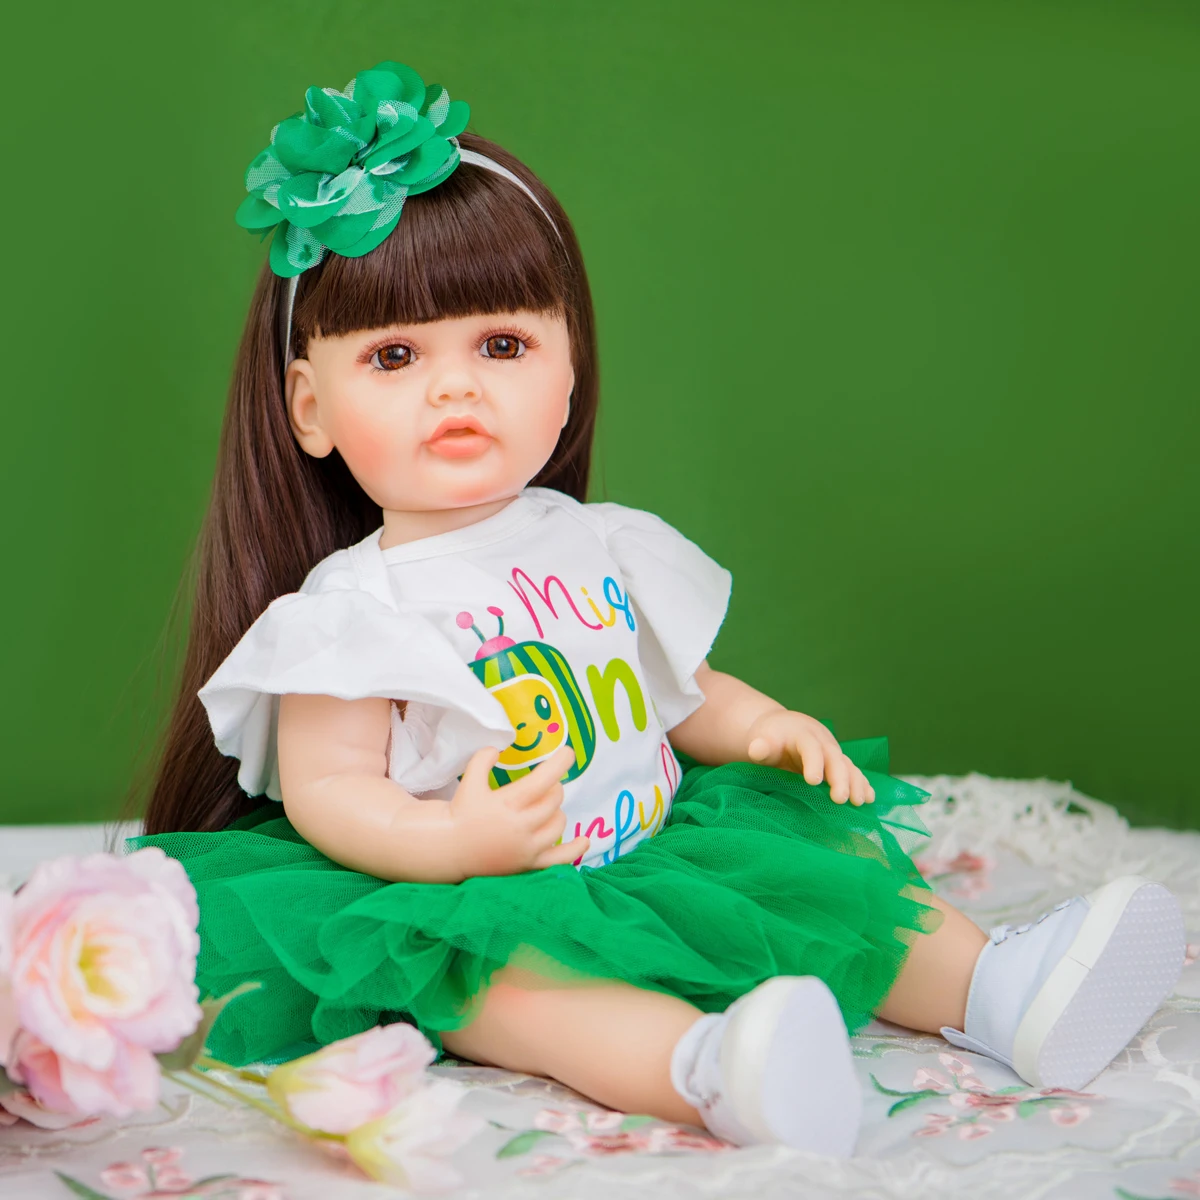 Edição limitada Estilos de Melancia Saia 55cm Boneca de Silicone de Vinil Reborn Baby Doll Brinquedos Presentes de Aniversário Para o Dia das Crianças